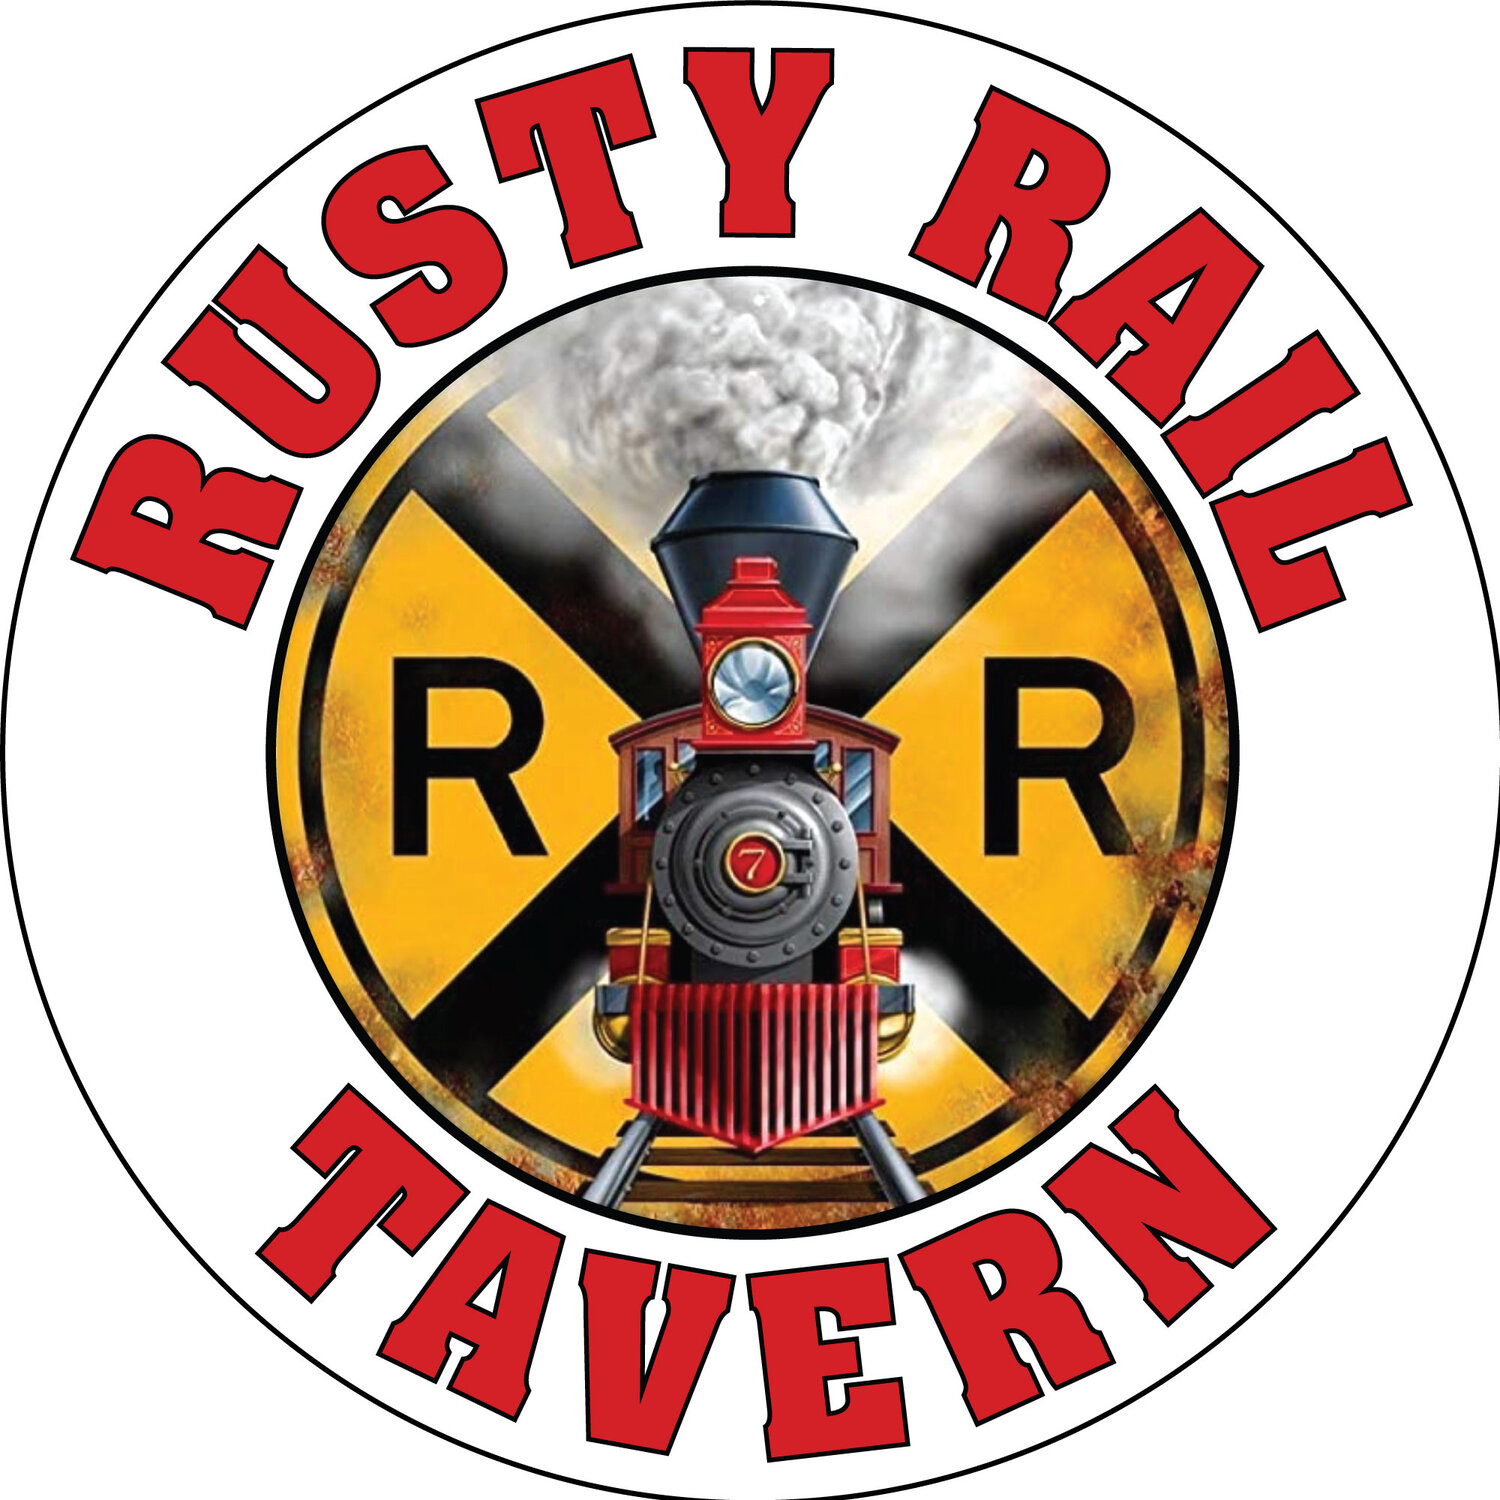 The Rusty Rail Tavern